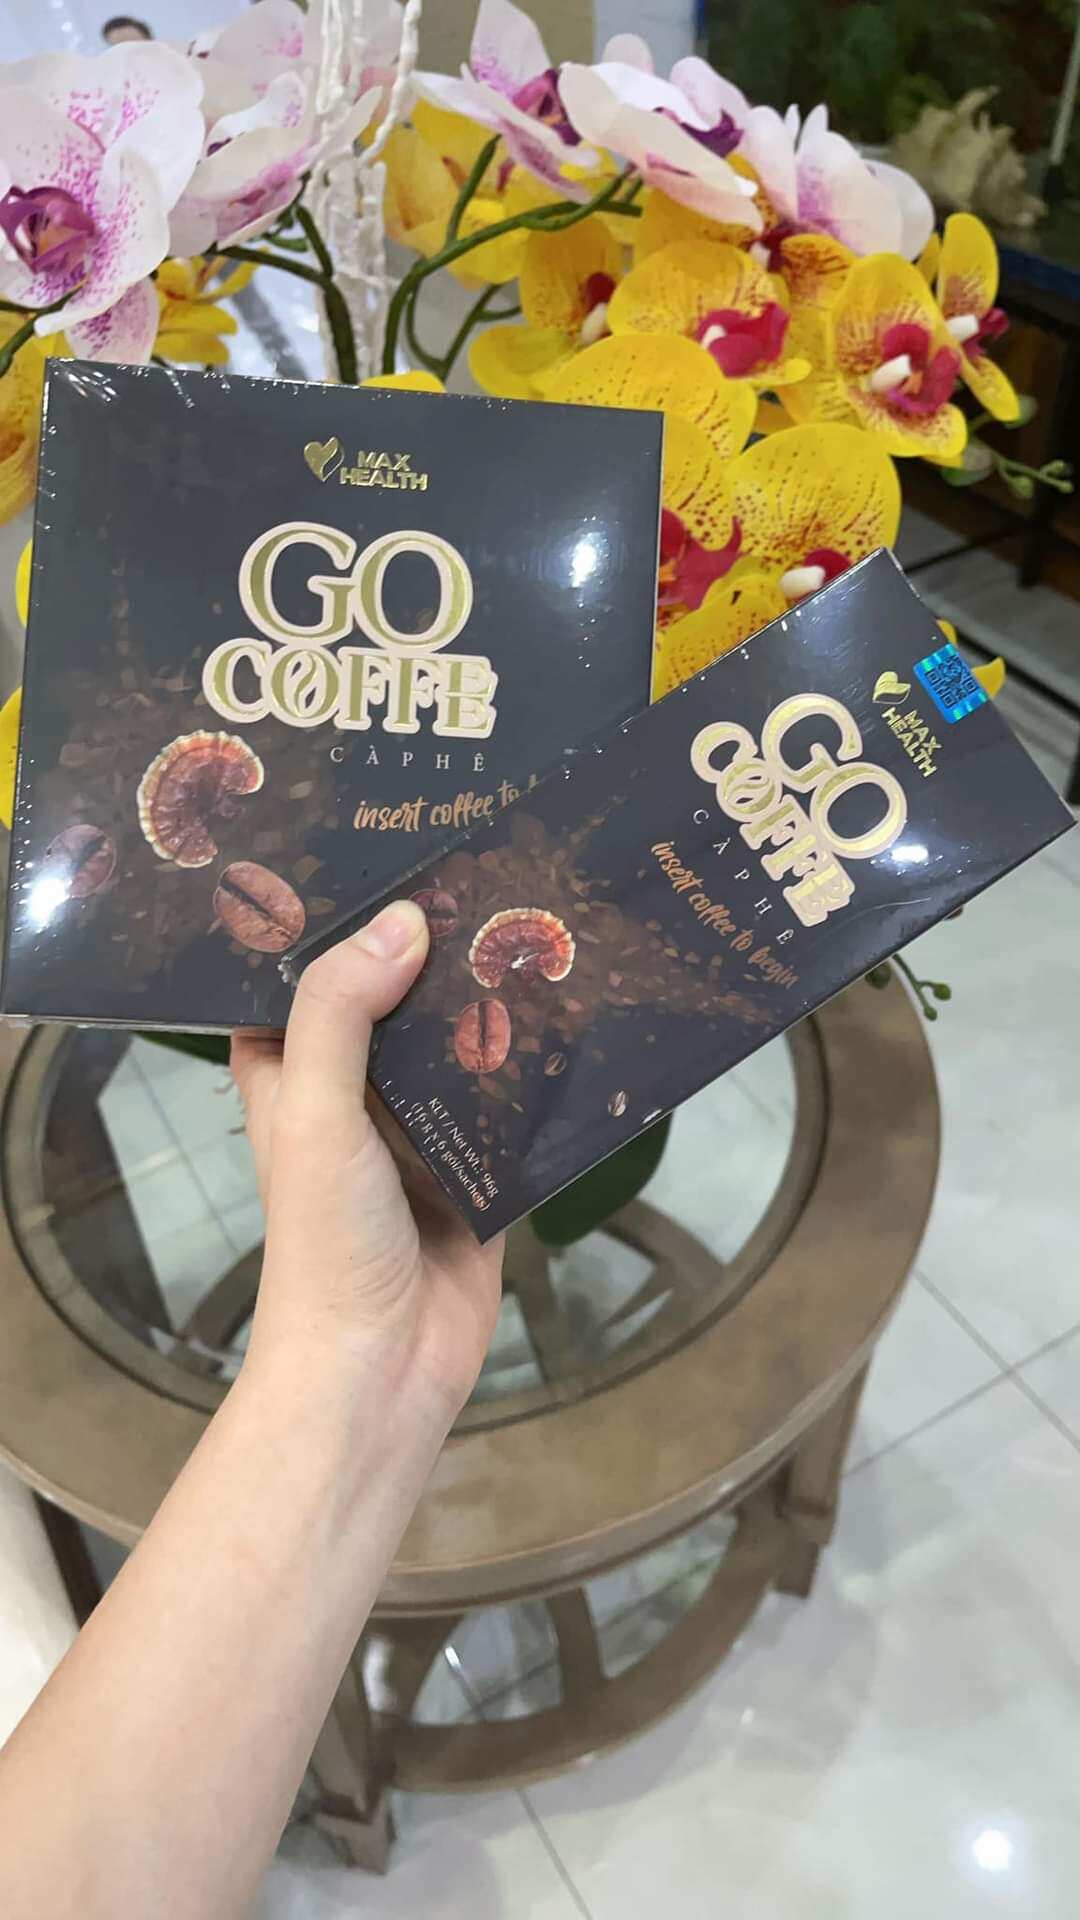 Cà phê Giảm cân Go Coffee (Hộp 6 gói x 16g) thumbnail